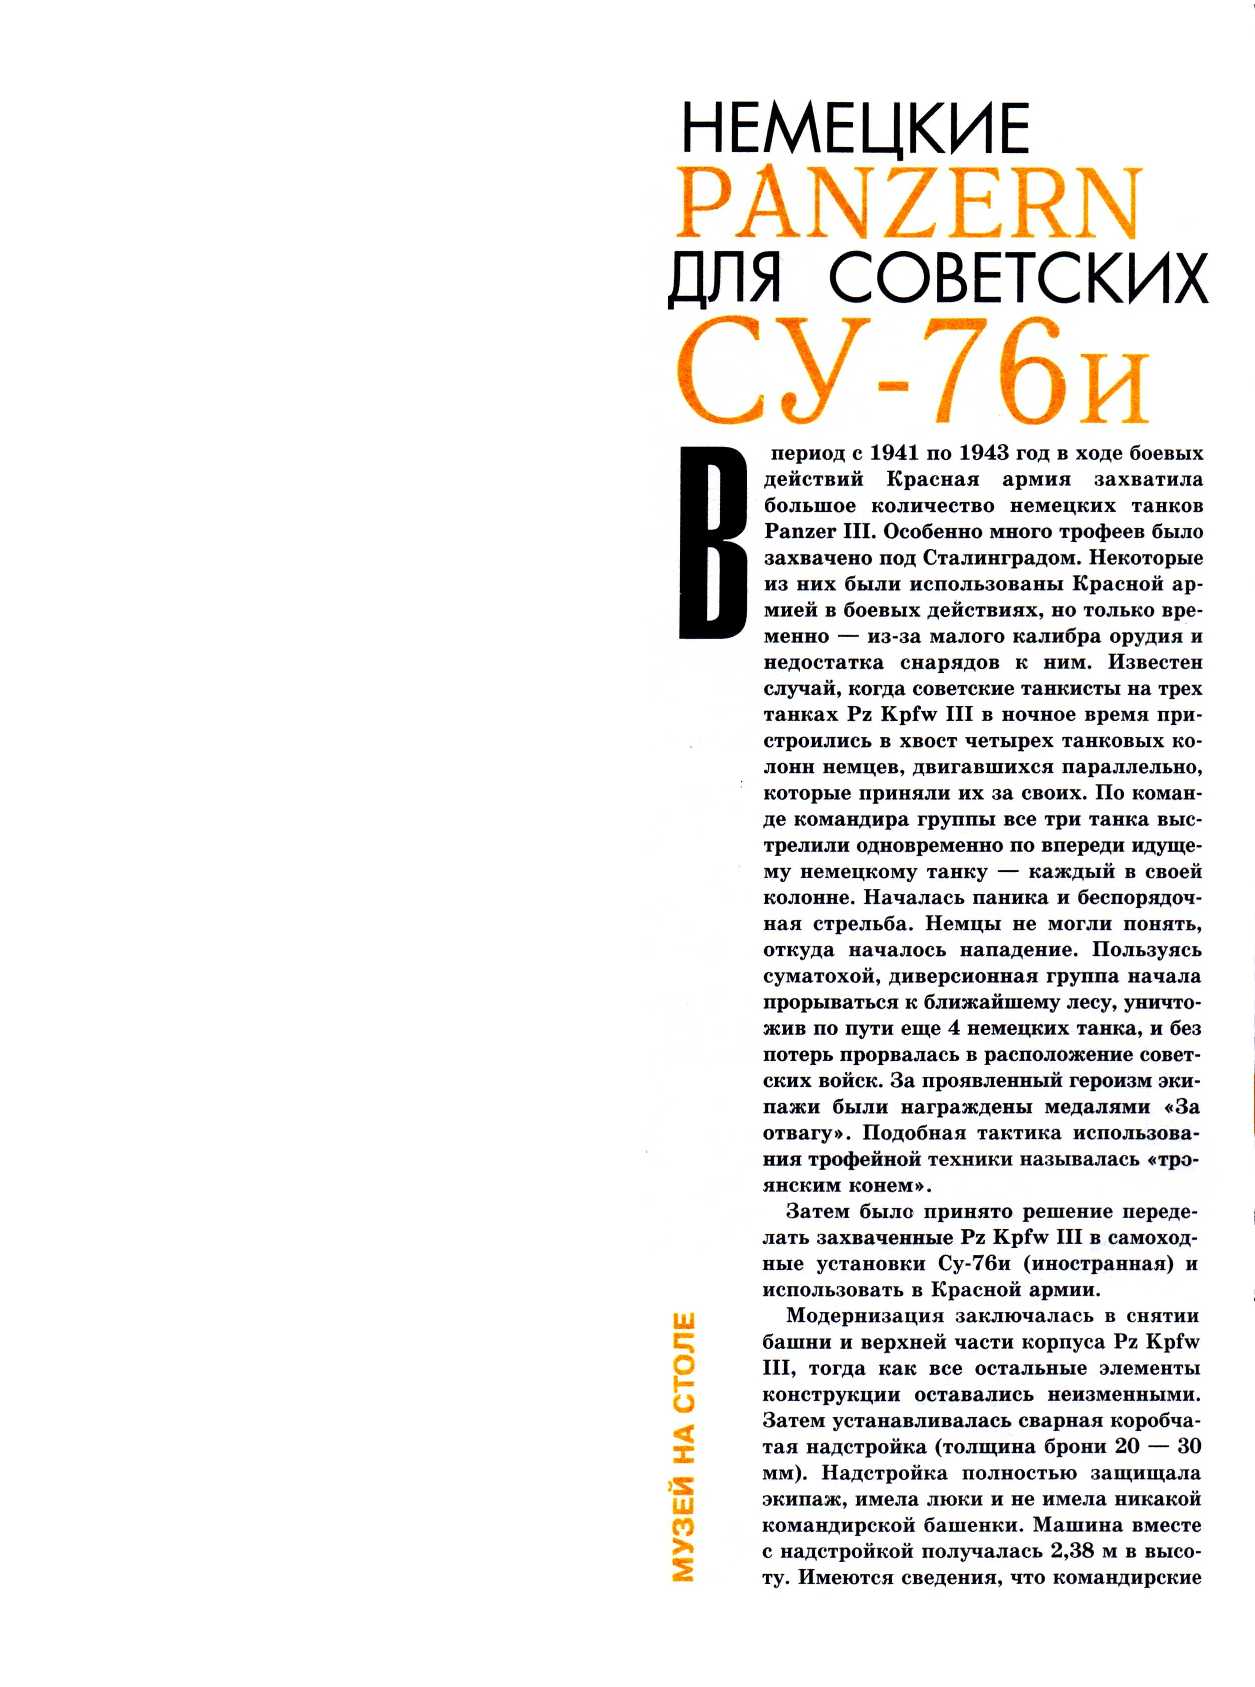 "Левша" 1, 2003, 2 c.